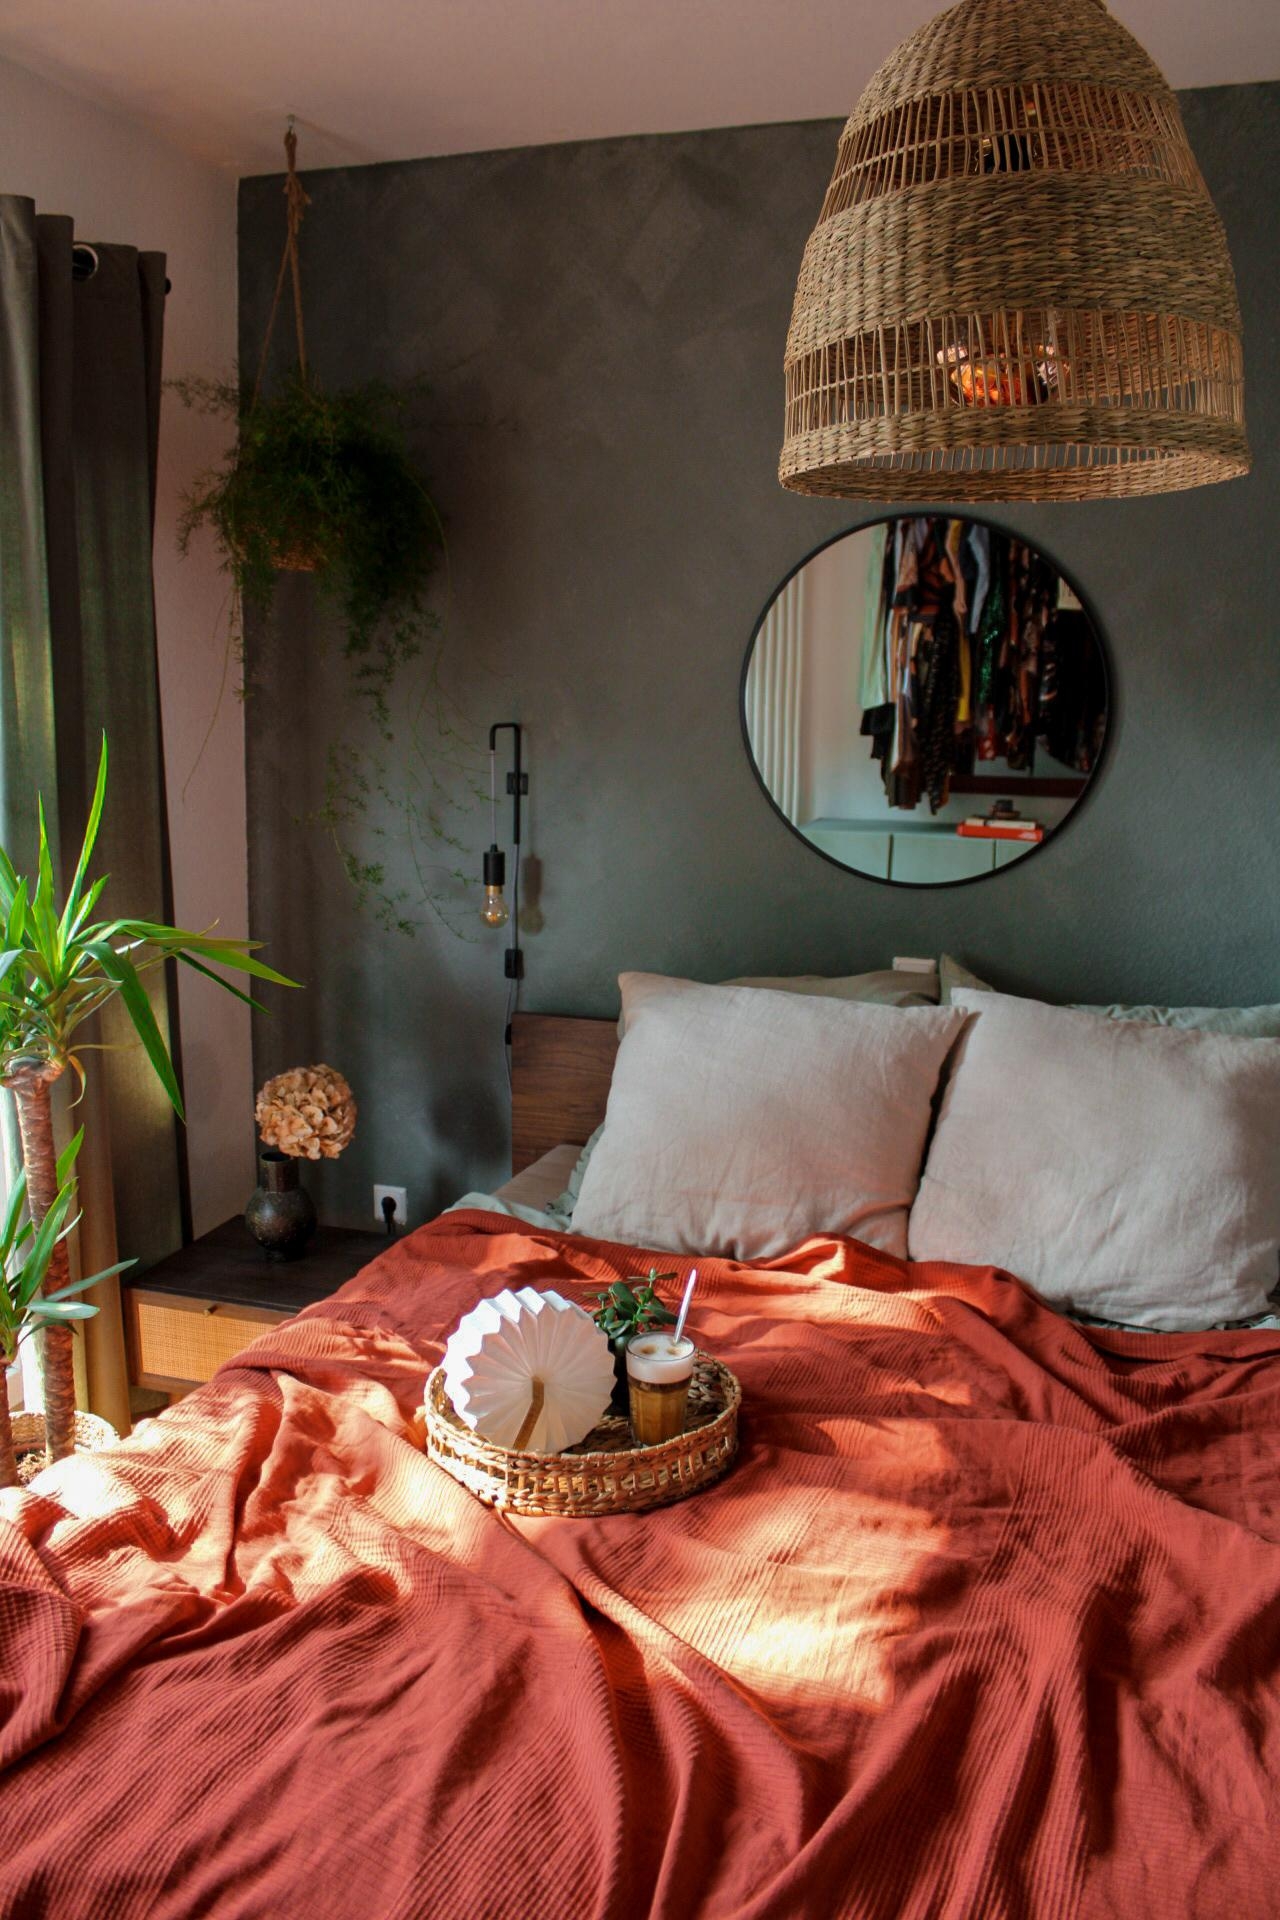 #Schlafzimmer
#bedroom
#bett
#bettwäsche